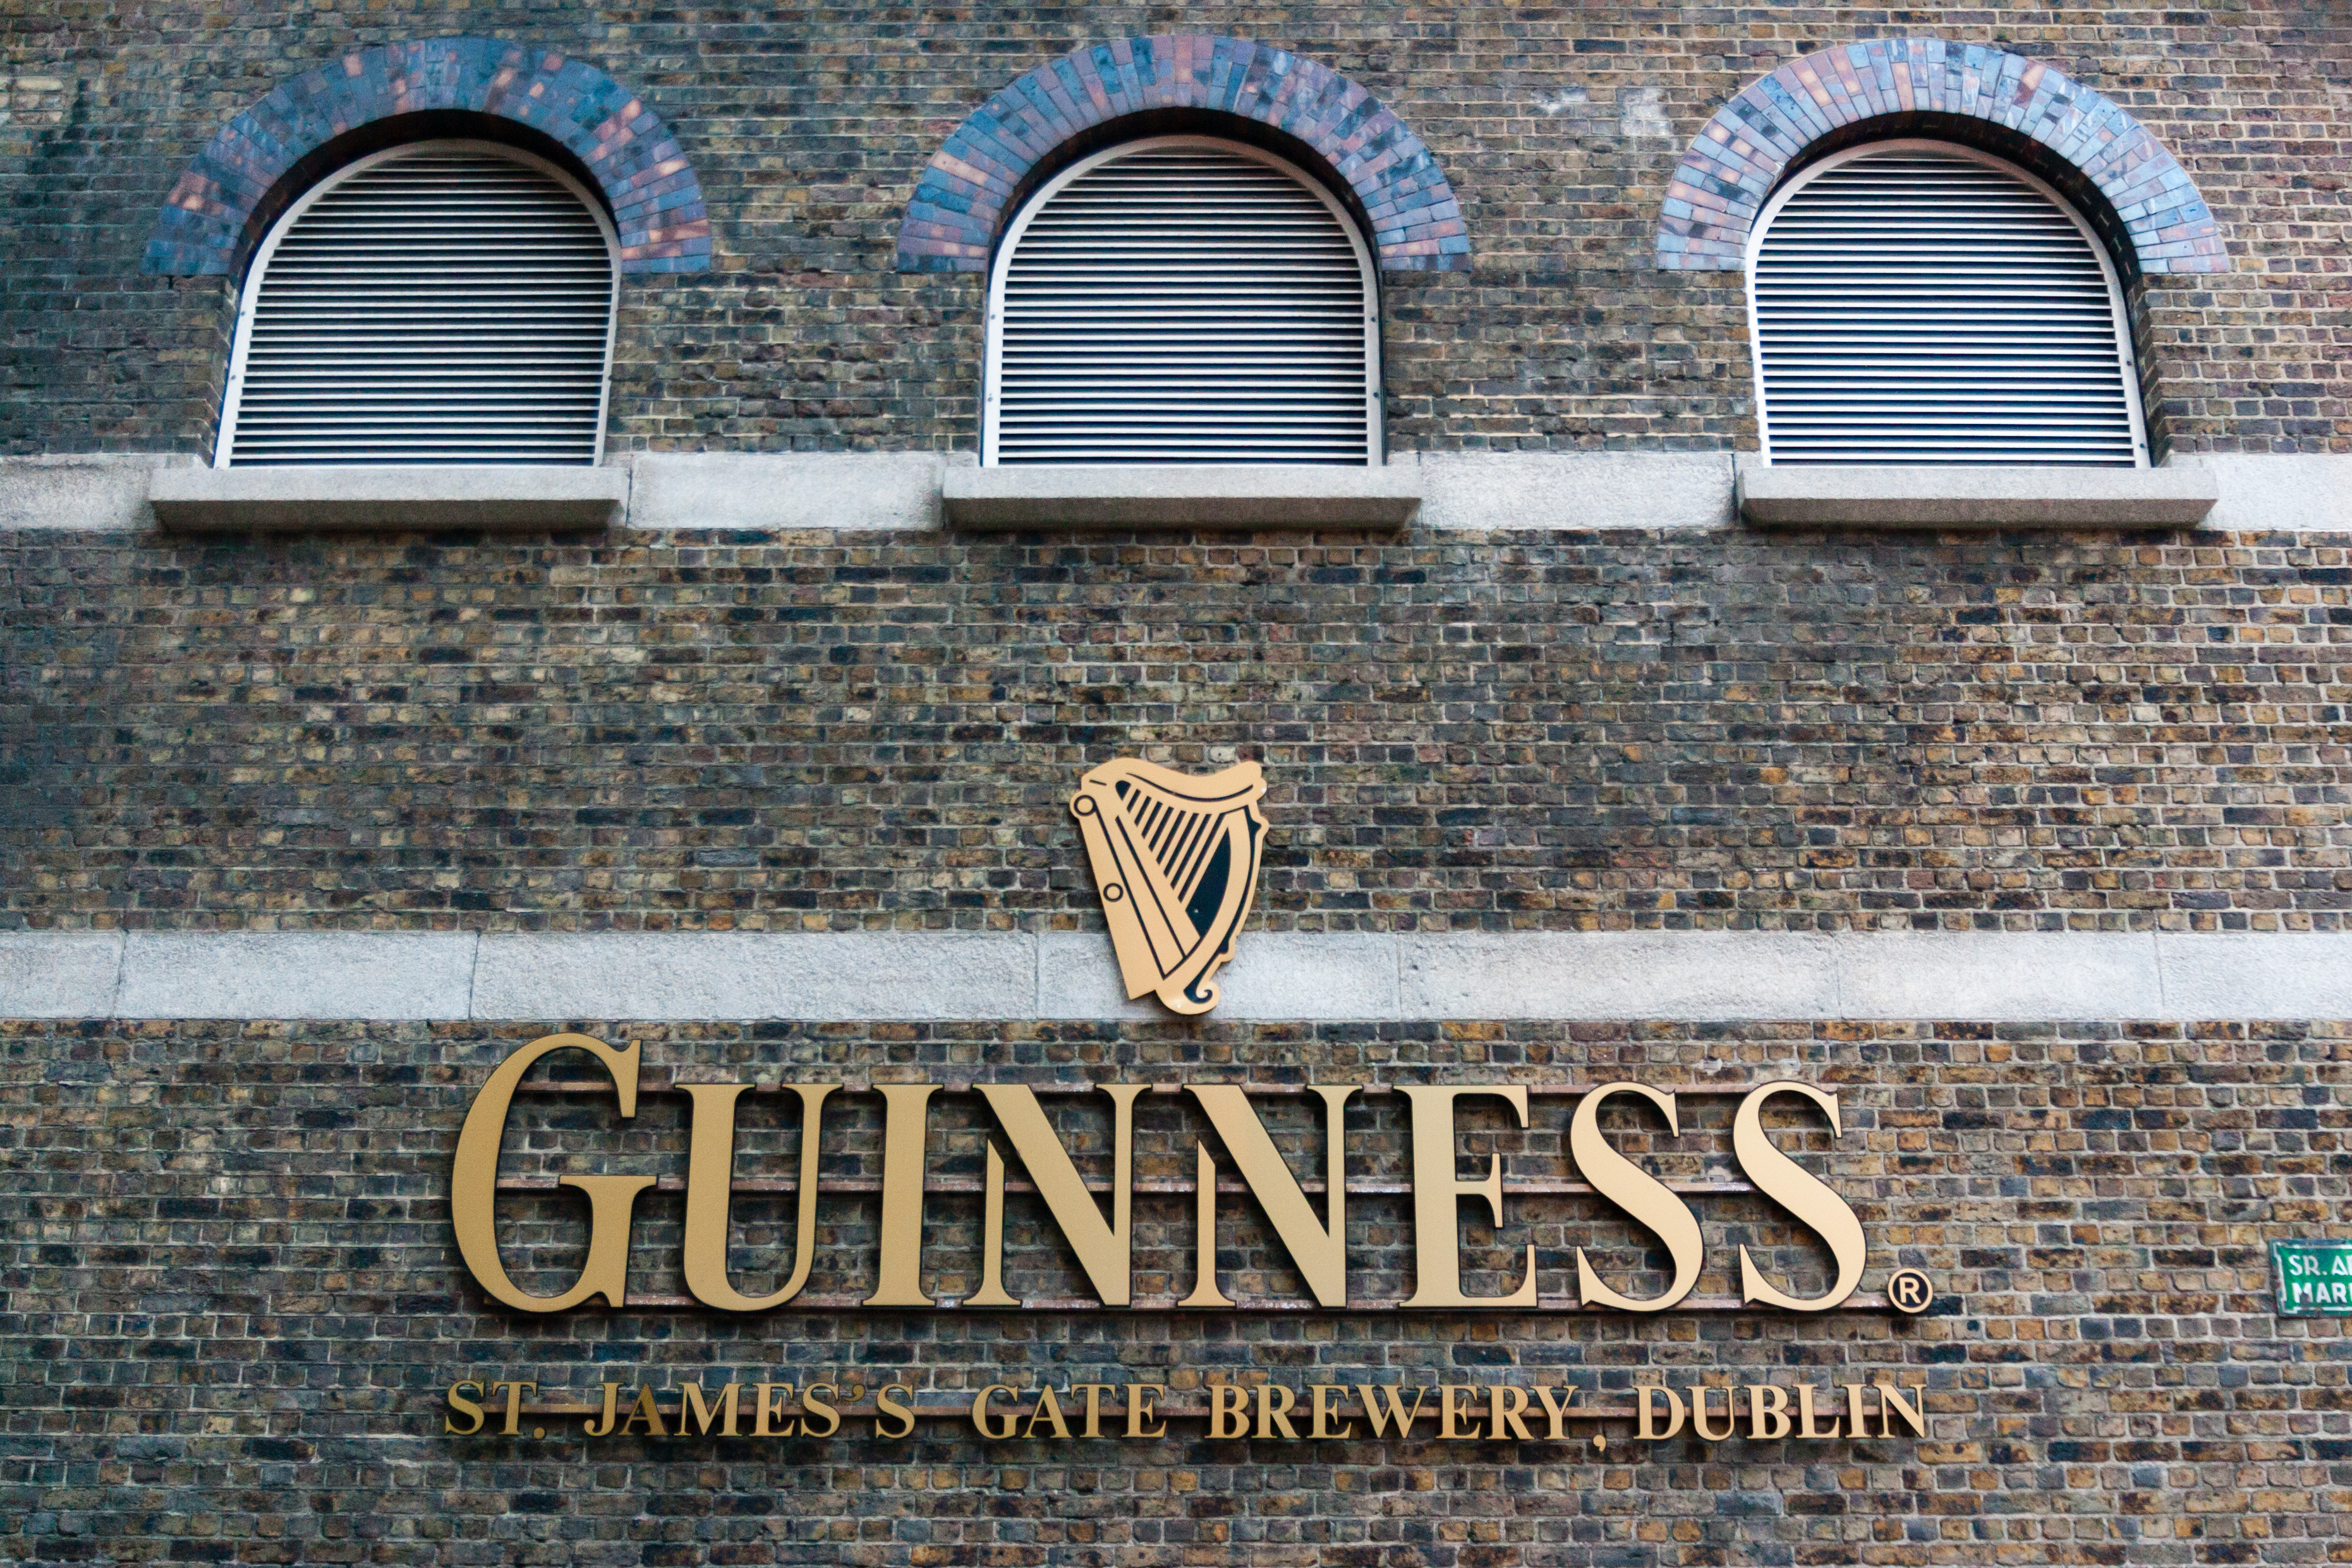 Mjesto gdje se proizvodi Guinness